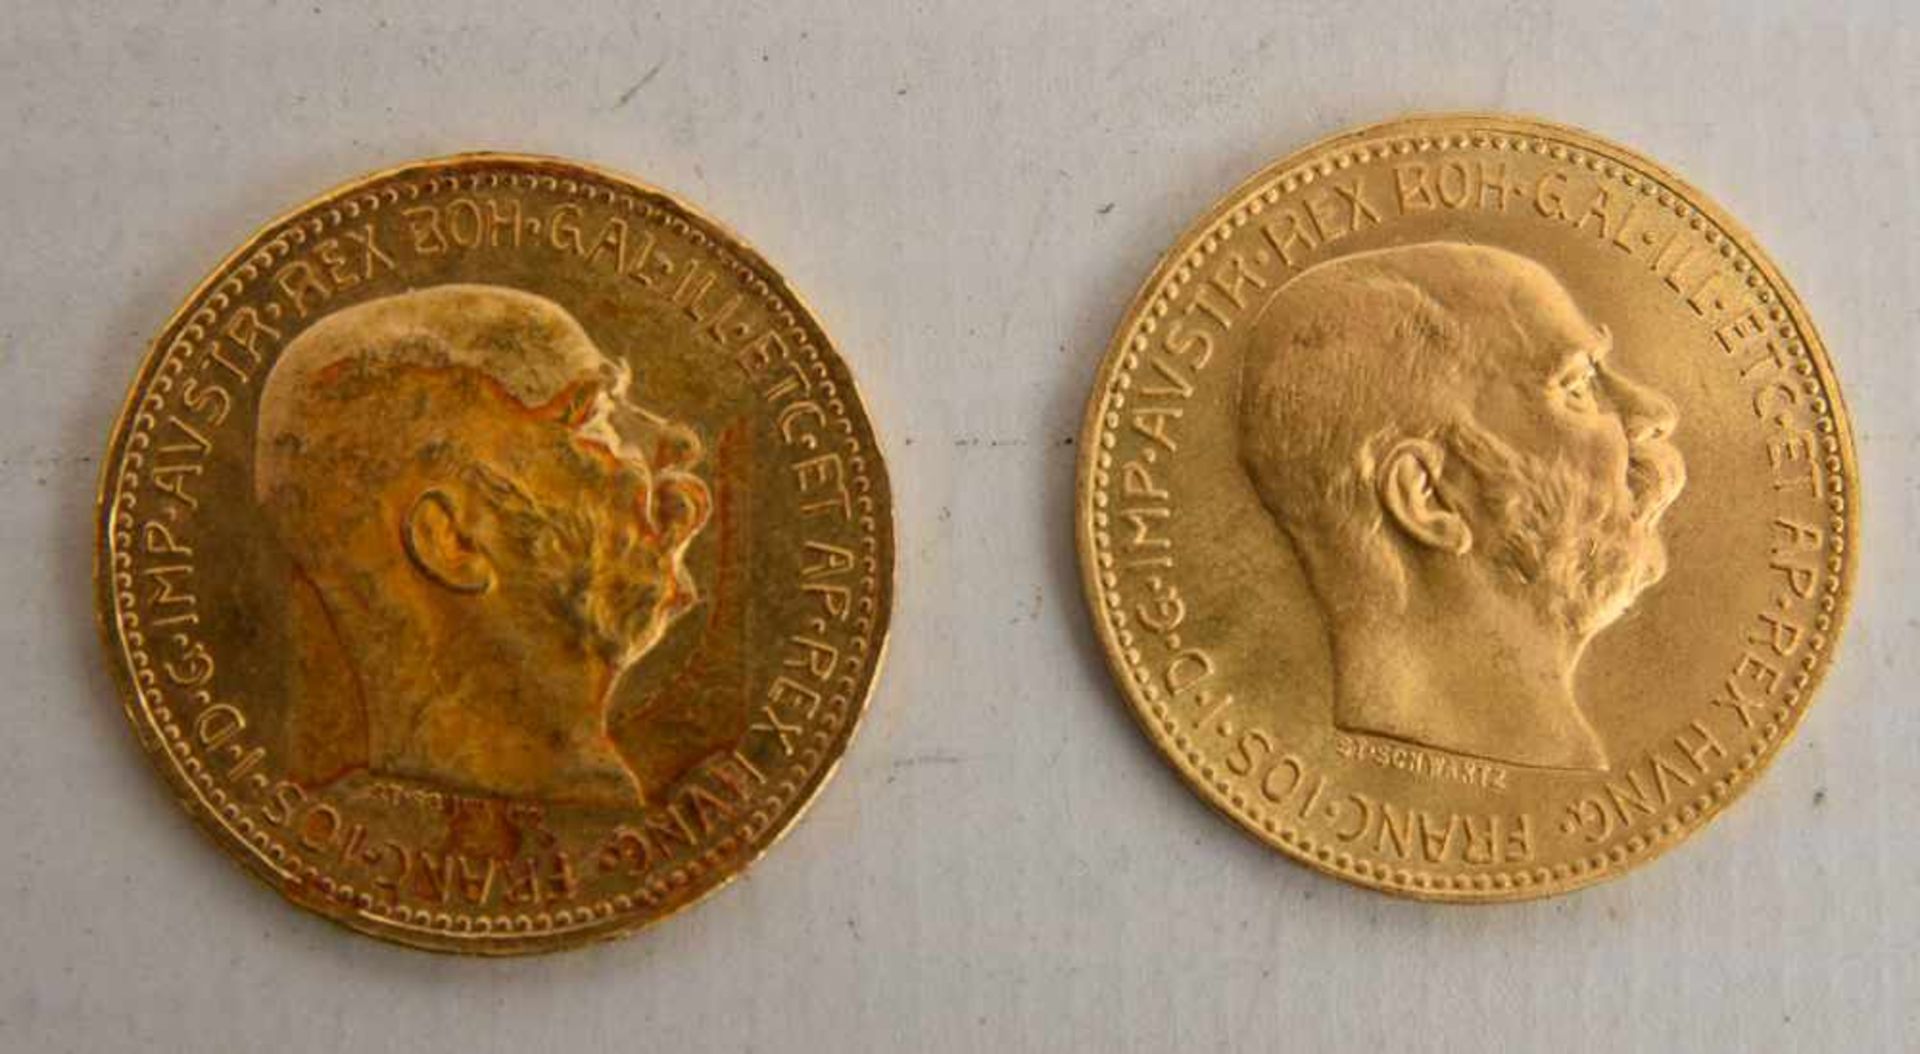 GOLDMÜNZEN KONVOLUT, Dukaten und Florin, 19. und. 20. Jahrhundert (3) 6 Münzen Konvolut bestehend - Image 8 of 9